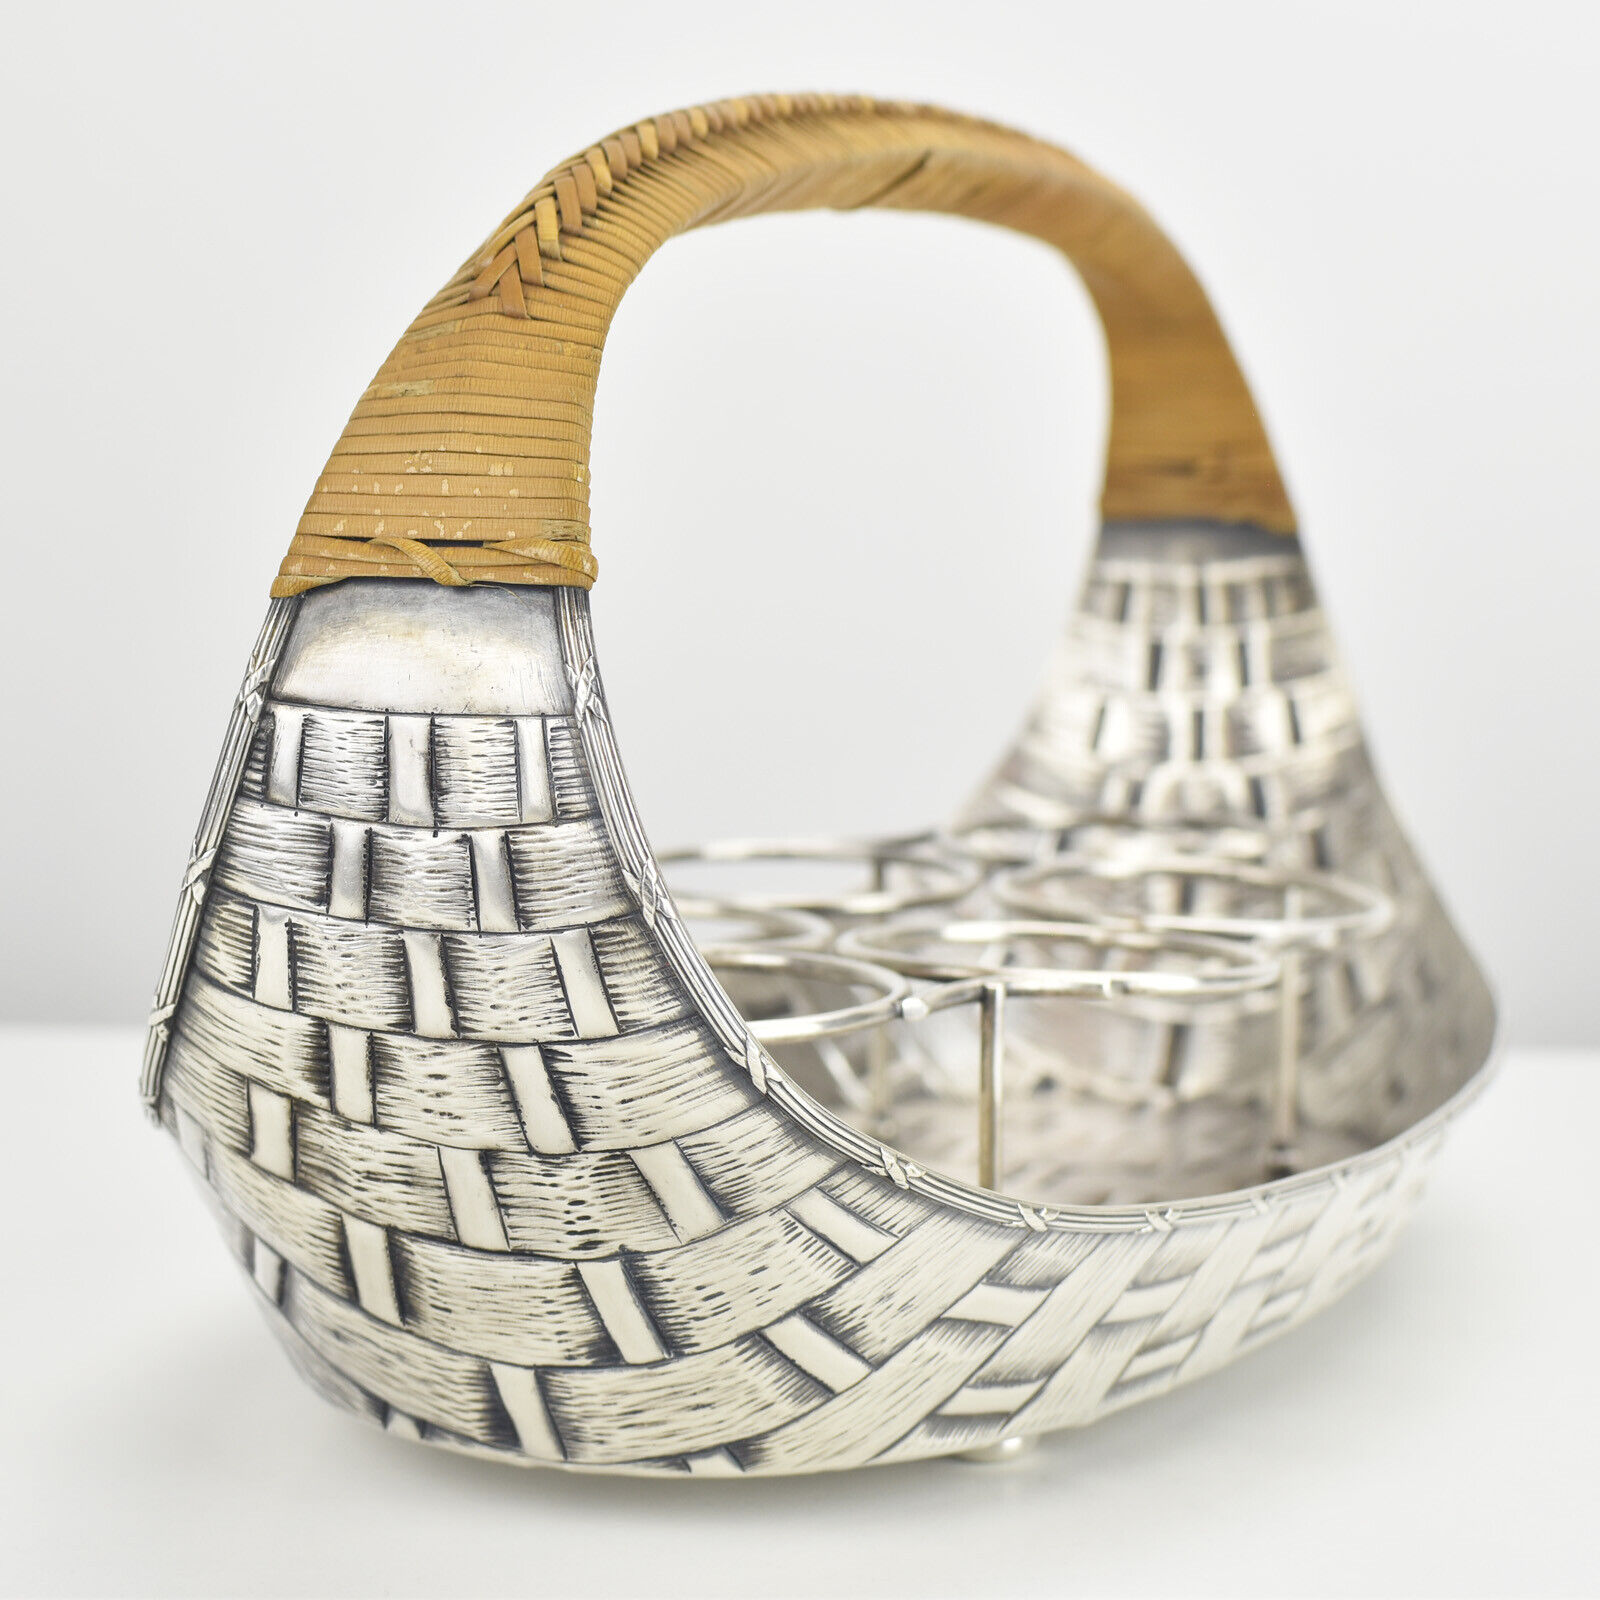 Antique Silverplated Basket Shaped Lemonade Glasses Holder Server Art Nouveau